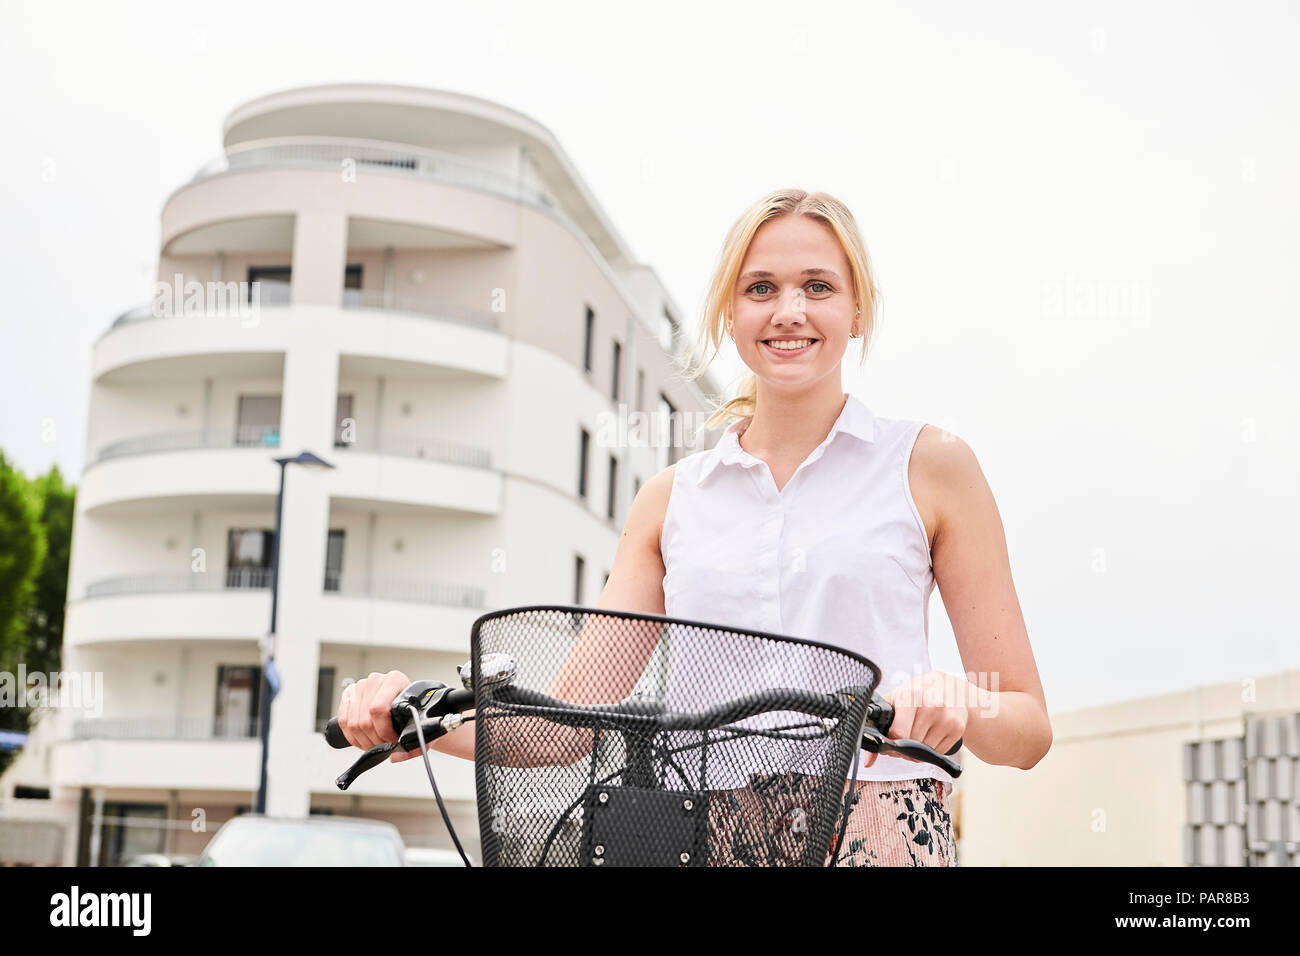 Portrait von lächelnden jungen Frau mit Fahrrad Stockfoto